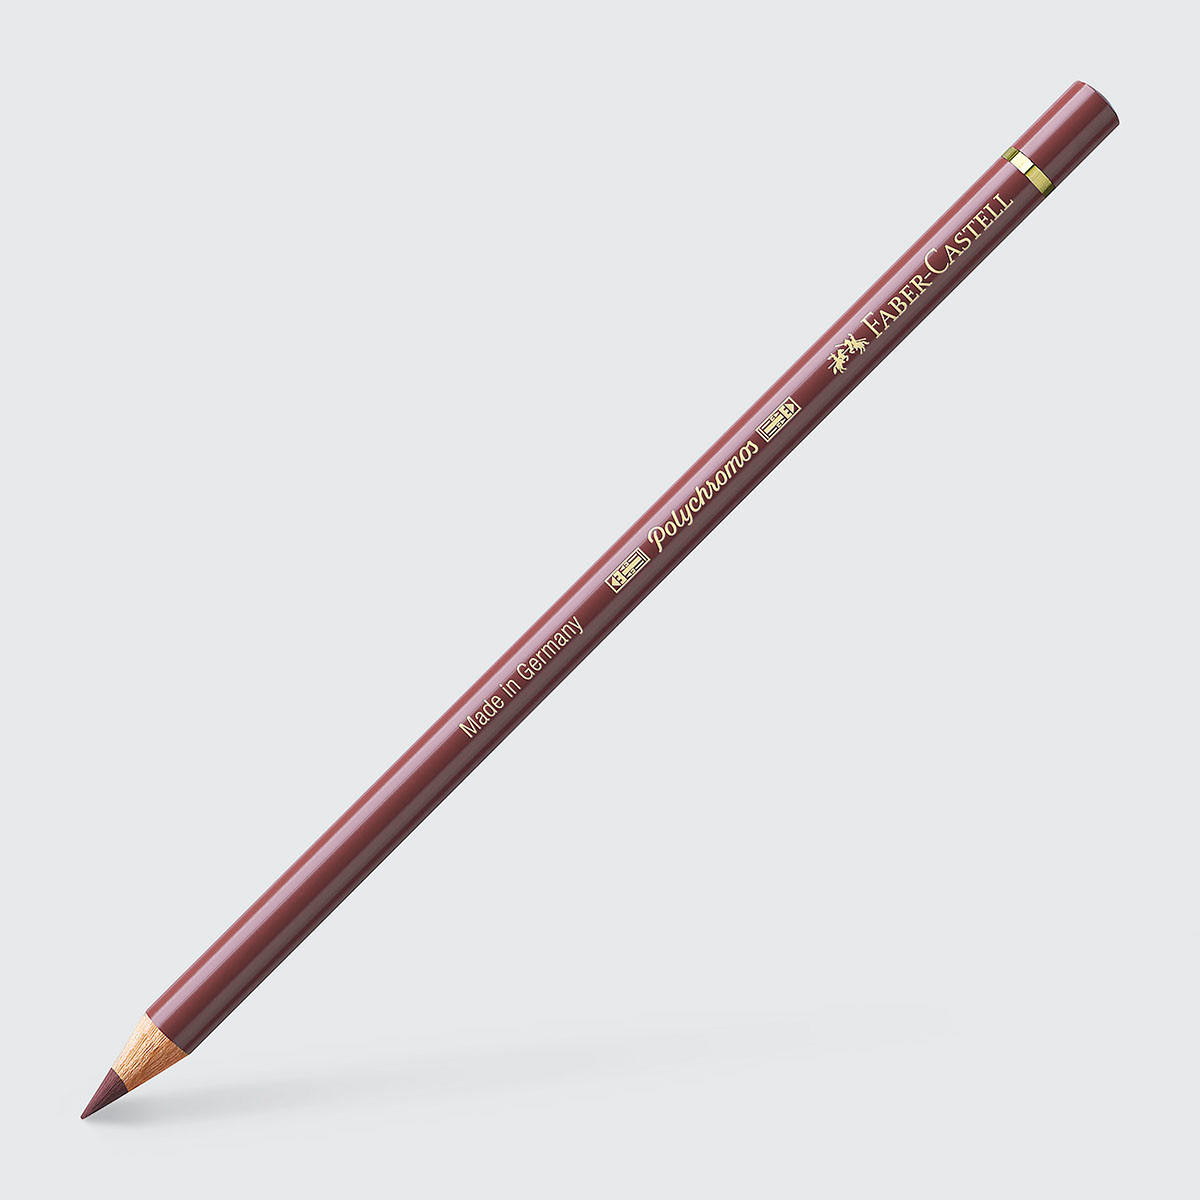 Faber-Castell Polychromos Artists’ Coloured Pencil One Size Caput Mortuum (169)